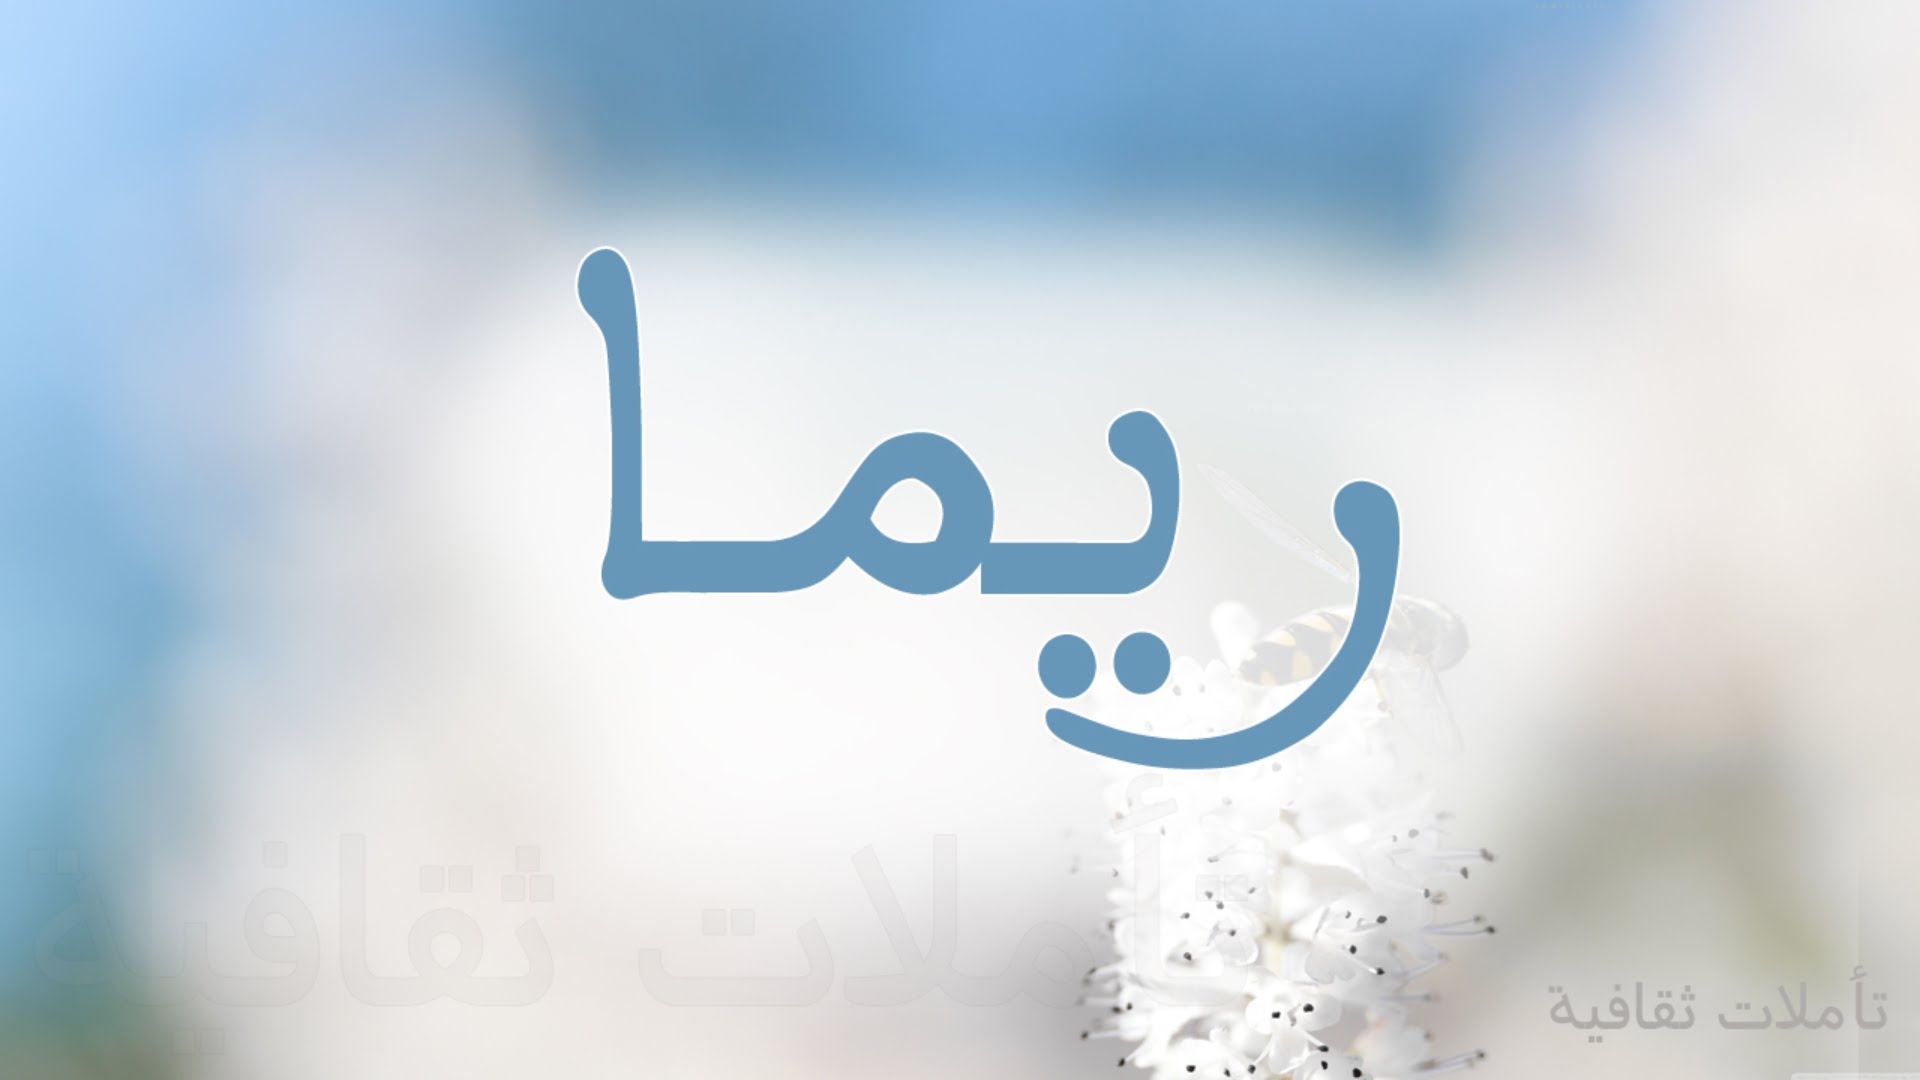 برنامج تصميم الصور عربي للكمبيوتر